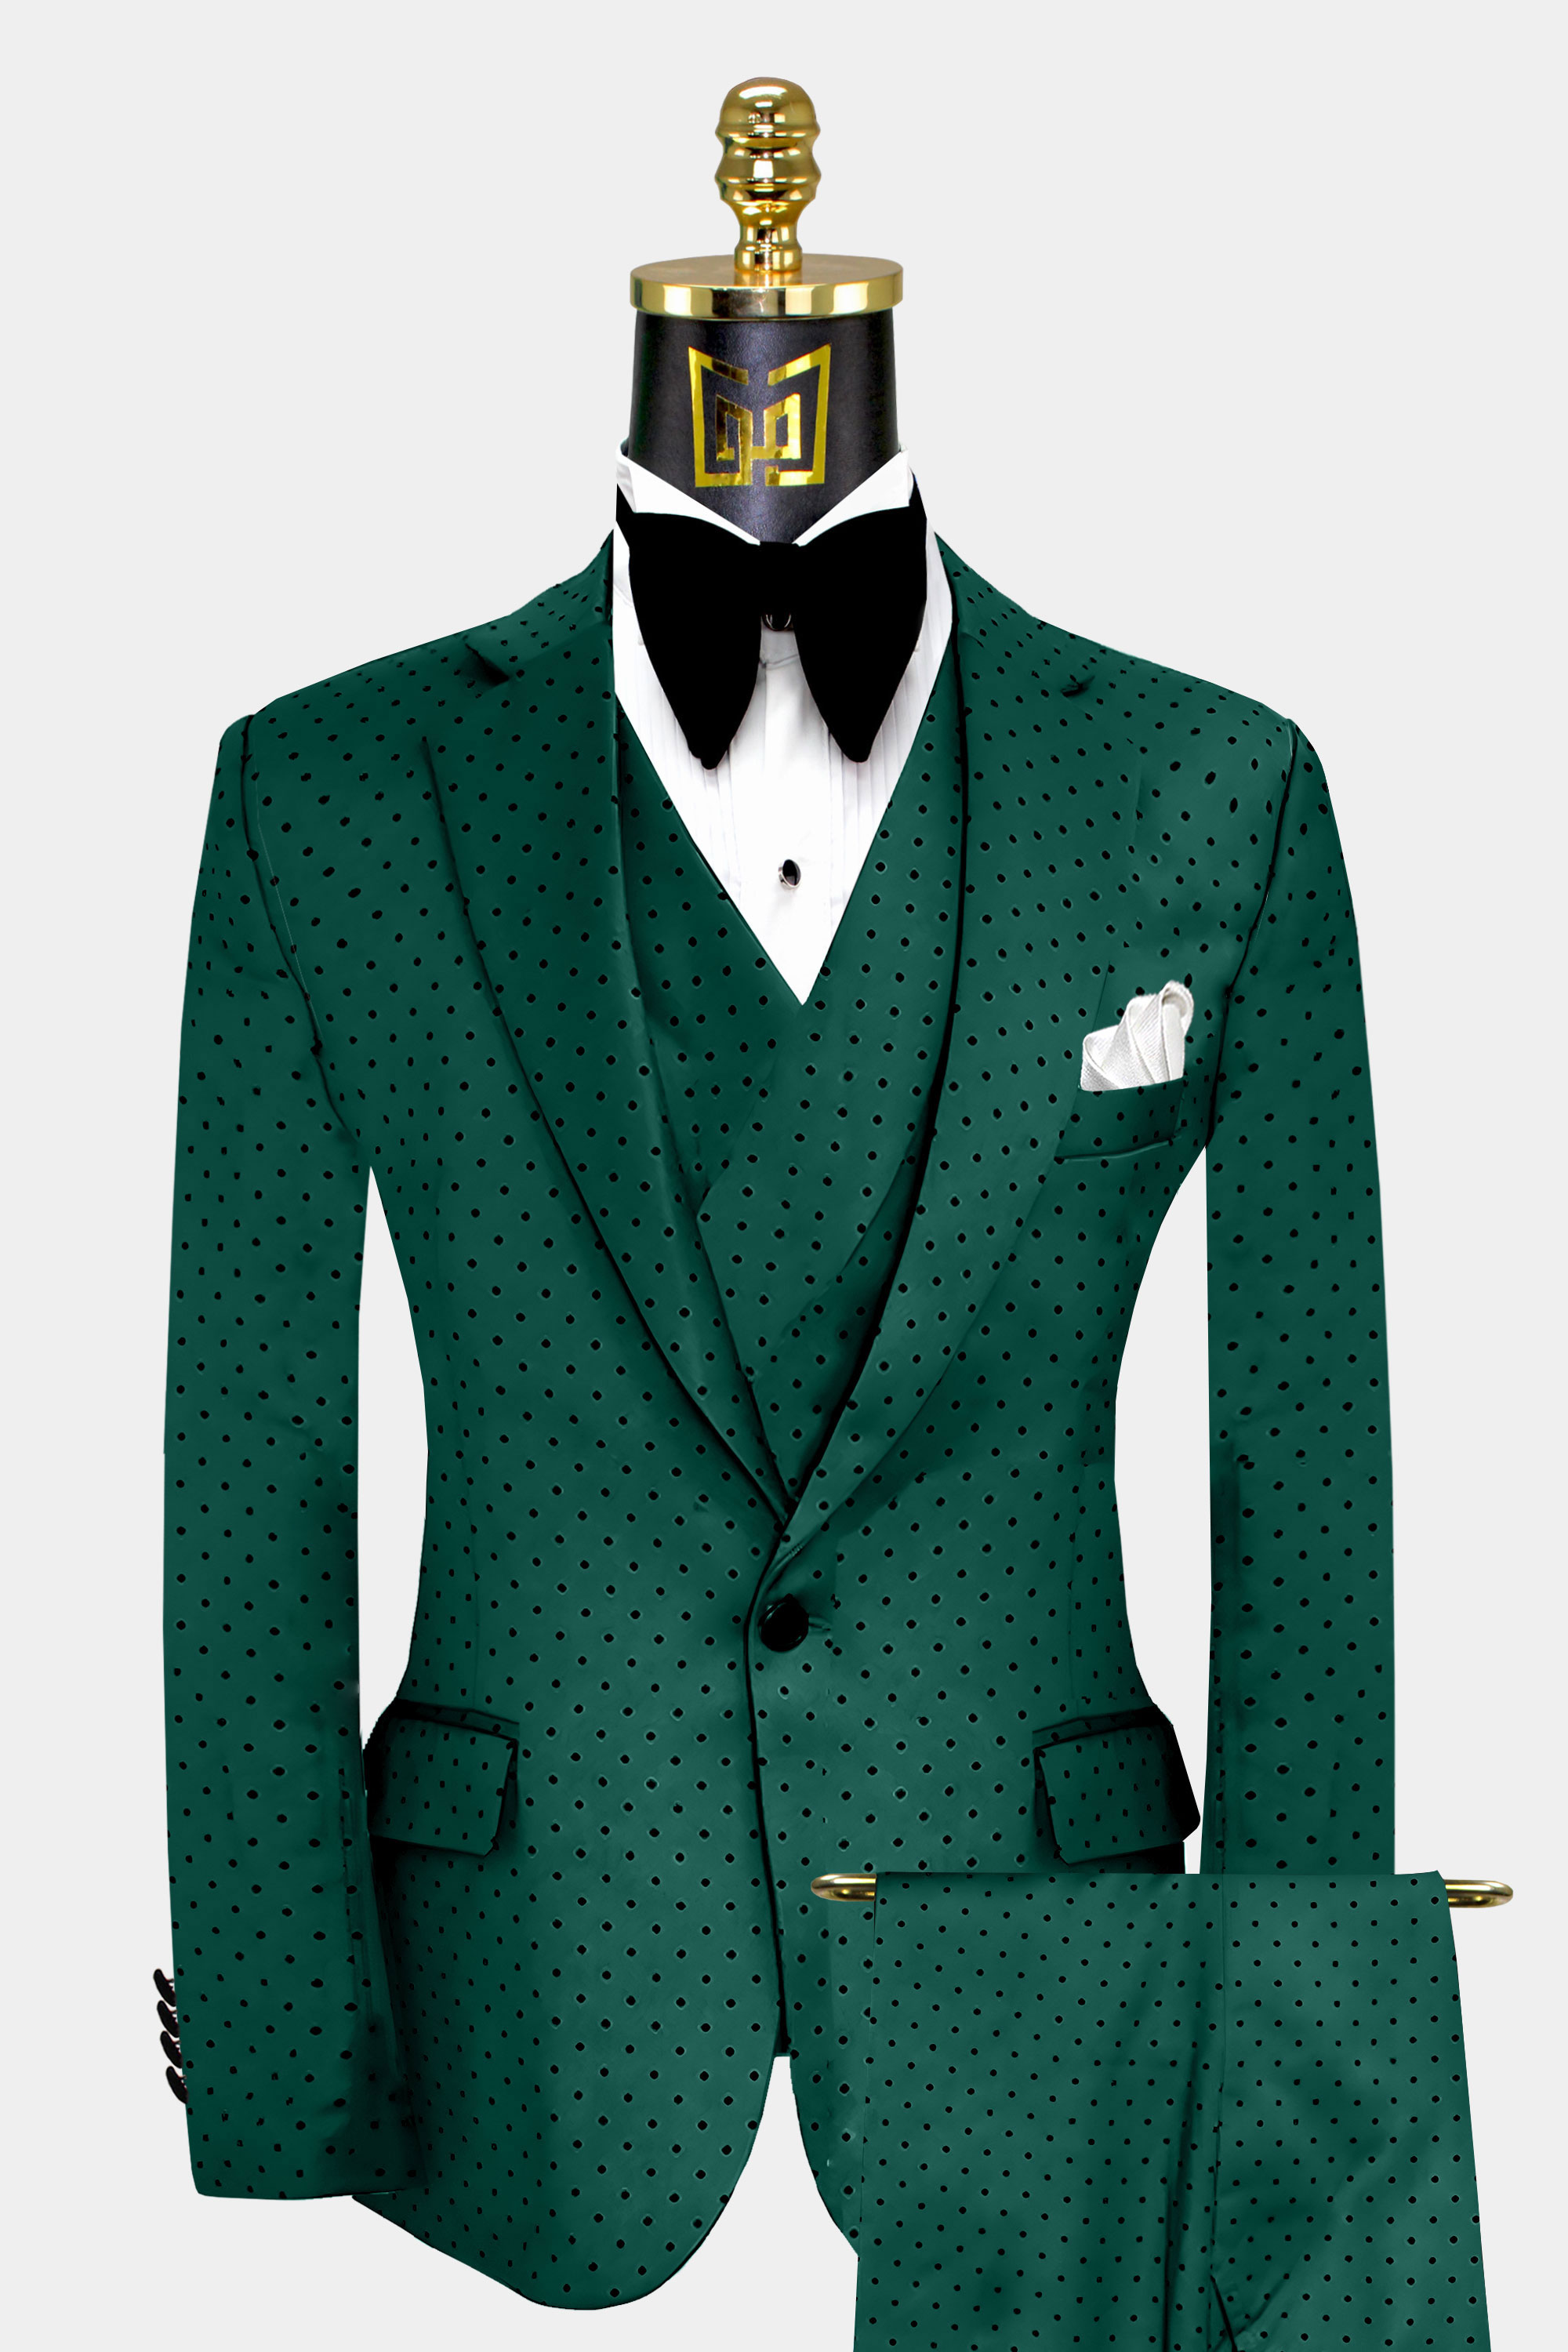 Mens Emerald Green Polka Dot Suit Wedding Groom Tuxedo From Gentlemansguru.com  